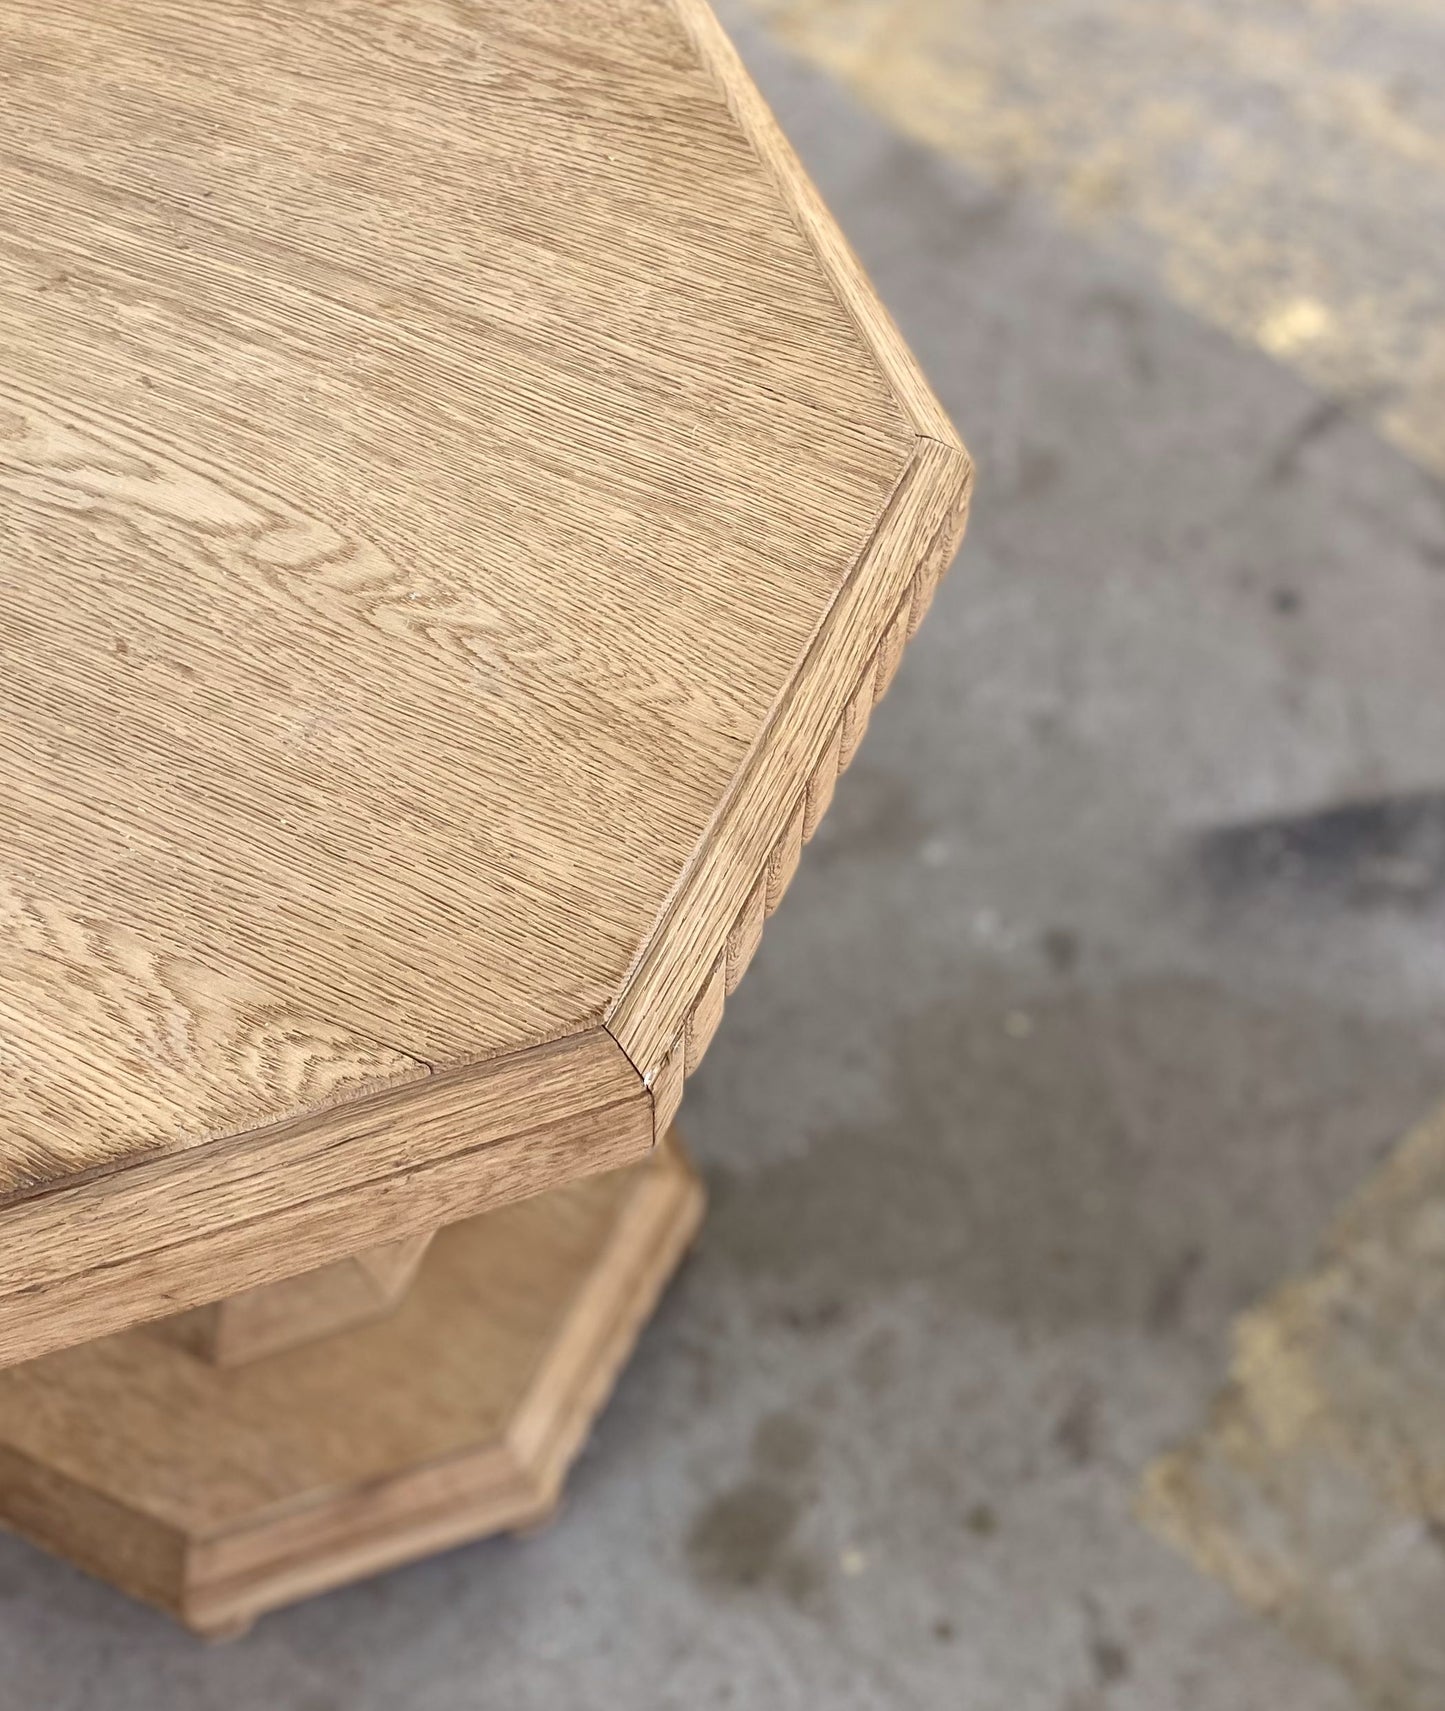 octagonal oak Table